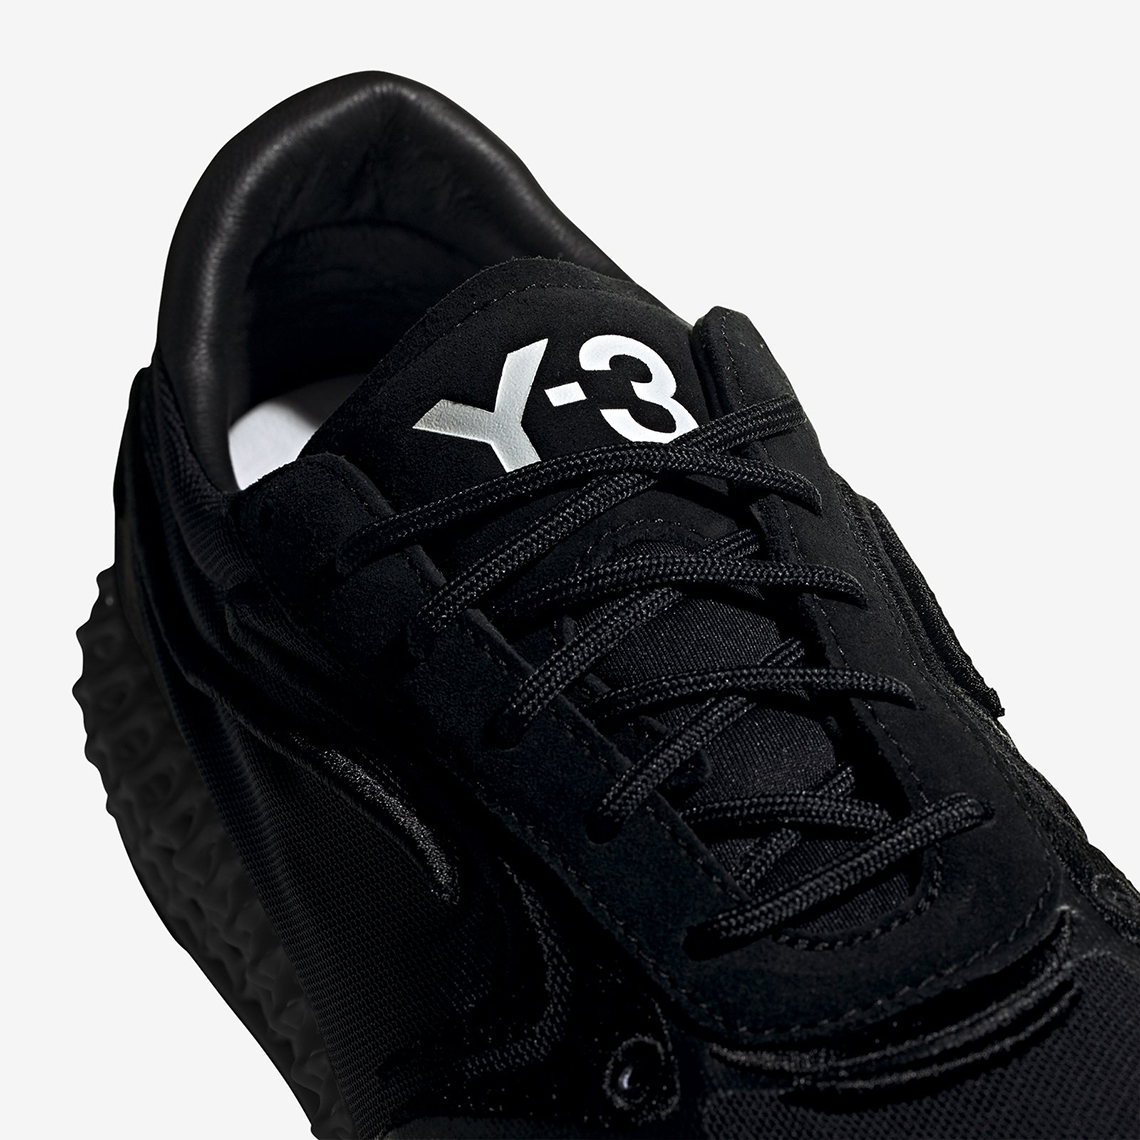 Adidas Y 3 Runner 4d Fu9207 Black Release Date 2